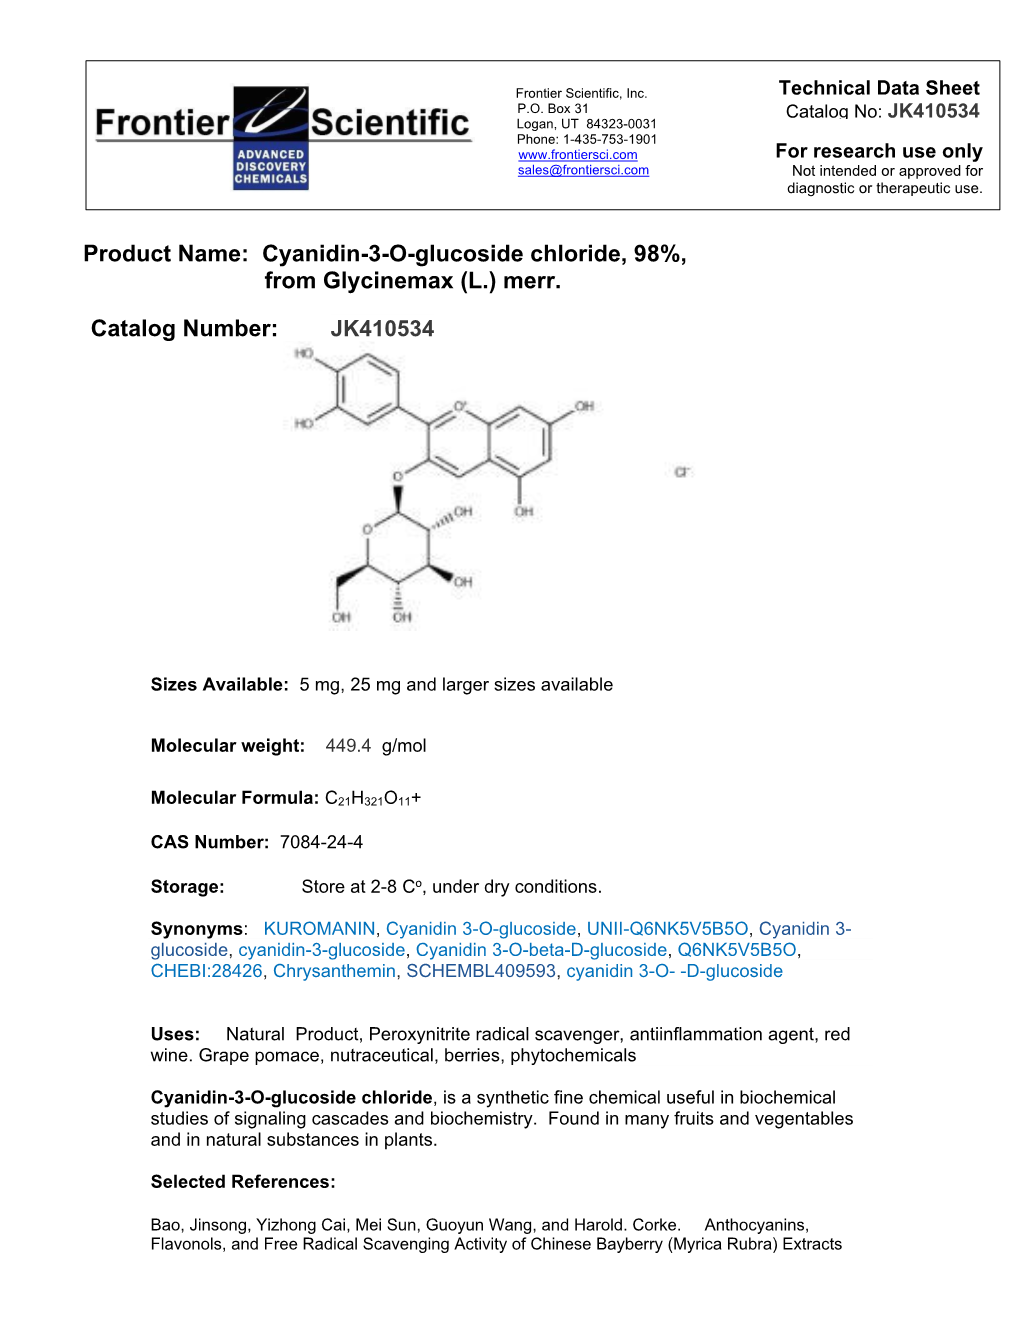 JK410534 Cyanidin-3-O-Glucoside Chloride